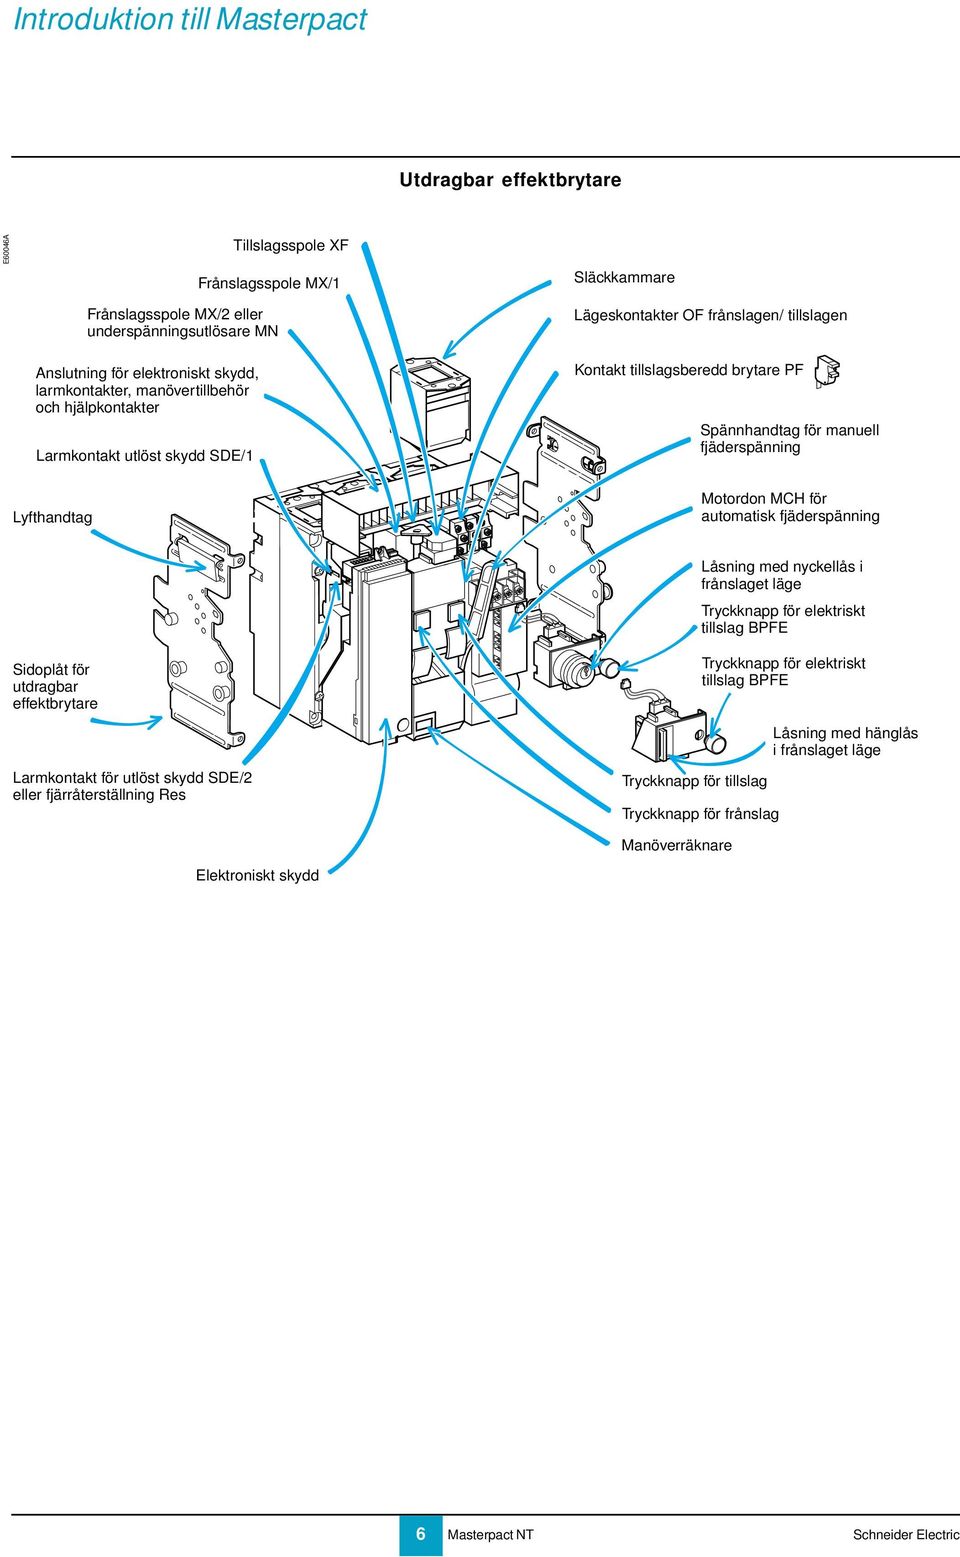 Lyfthandtag Motordon MCH för automatisk fjäderspänning Låsning med nyckellås i frånslaget läge Tryckknapp för elektriskt tillslag BPFE Sidoplåt för utdragbar effektbrytare Larmkontakt för utlöst